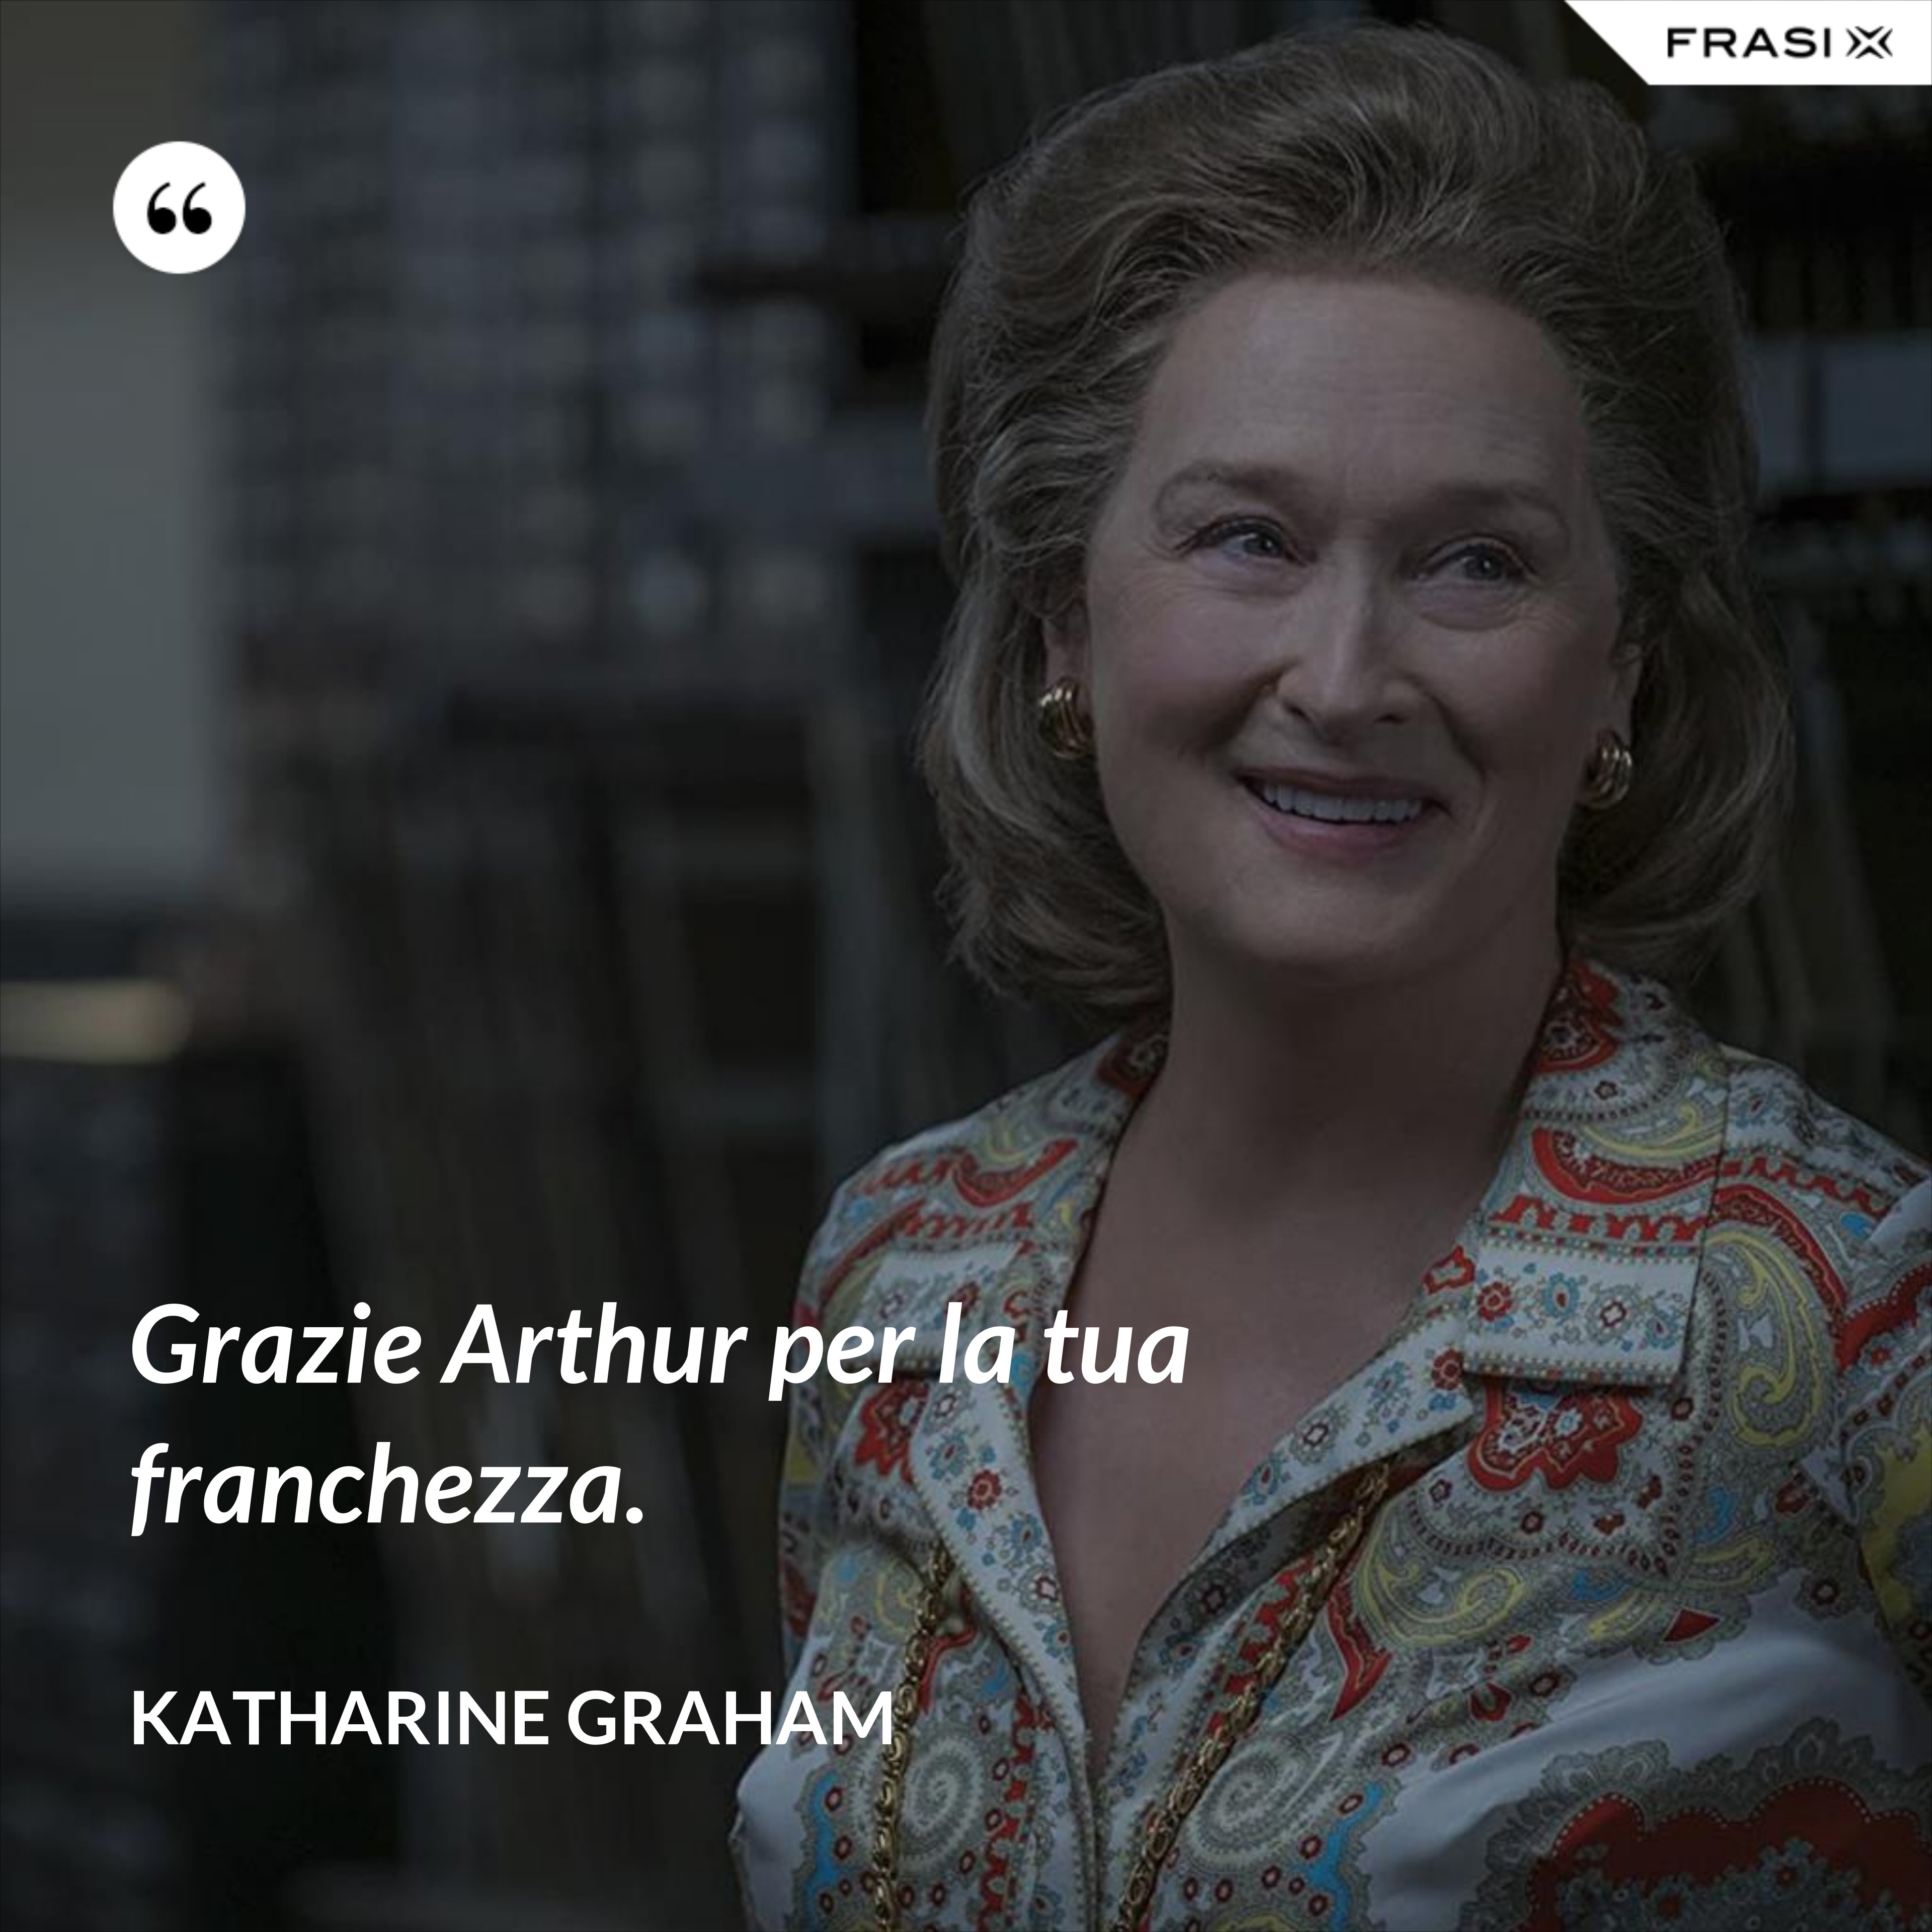 Grazie Arthur per la tua franchezza. - Katharine Graham